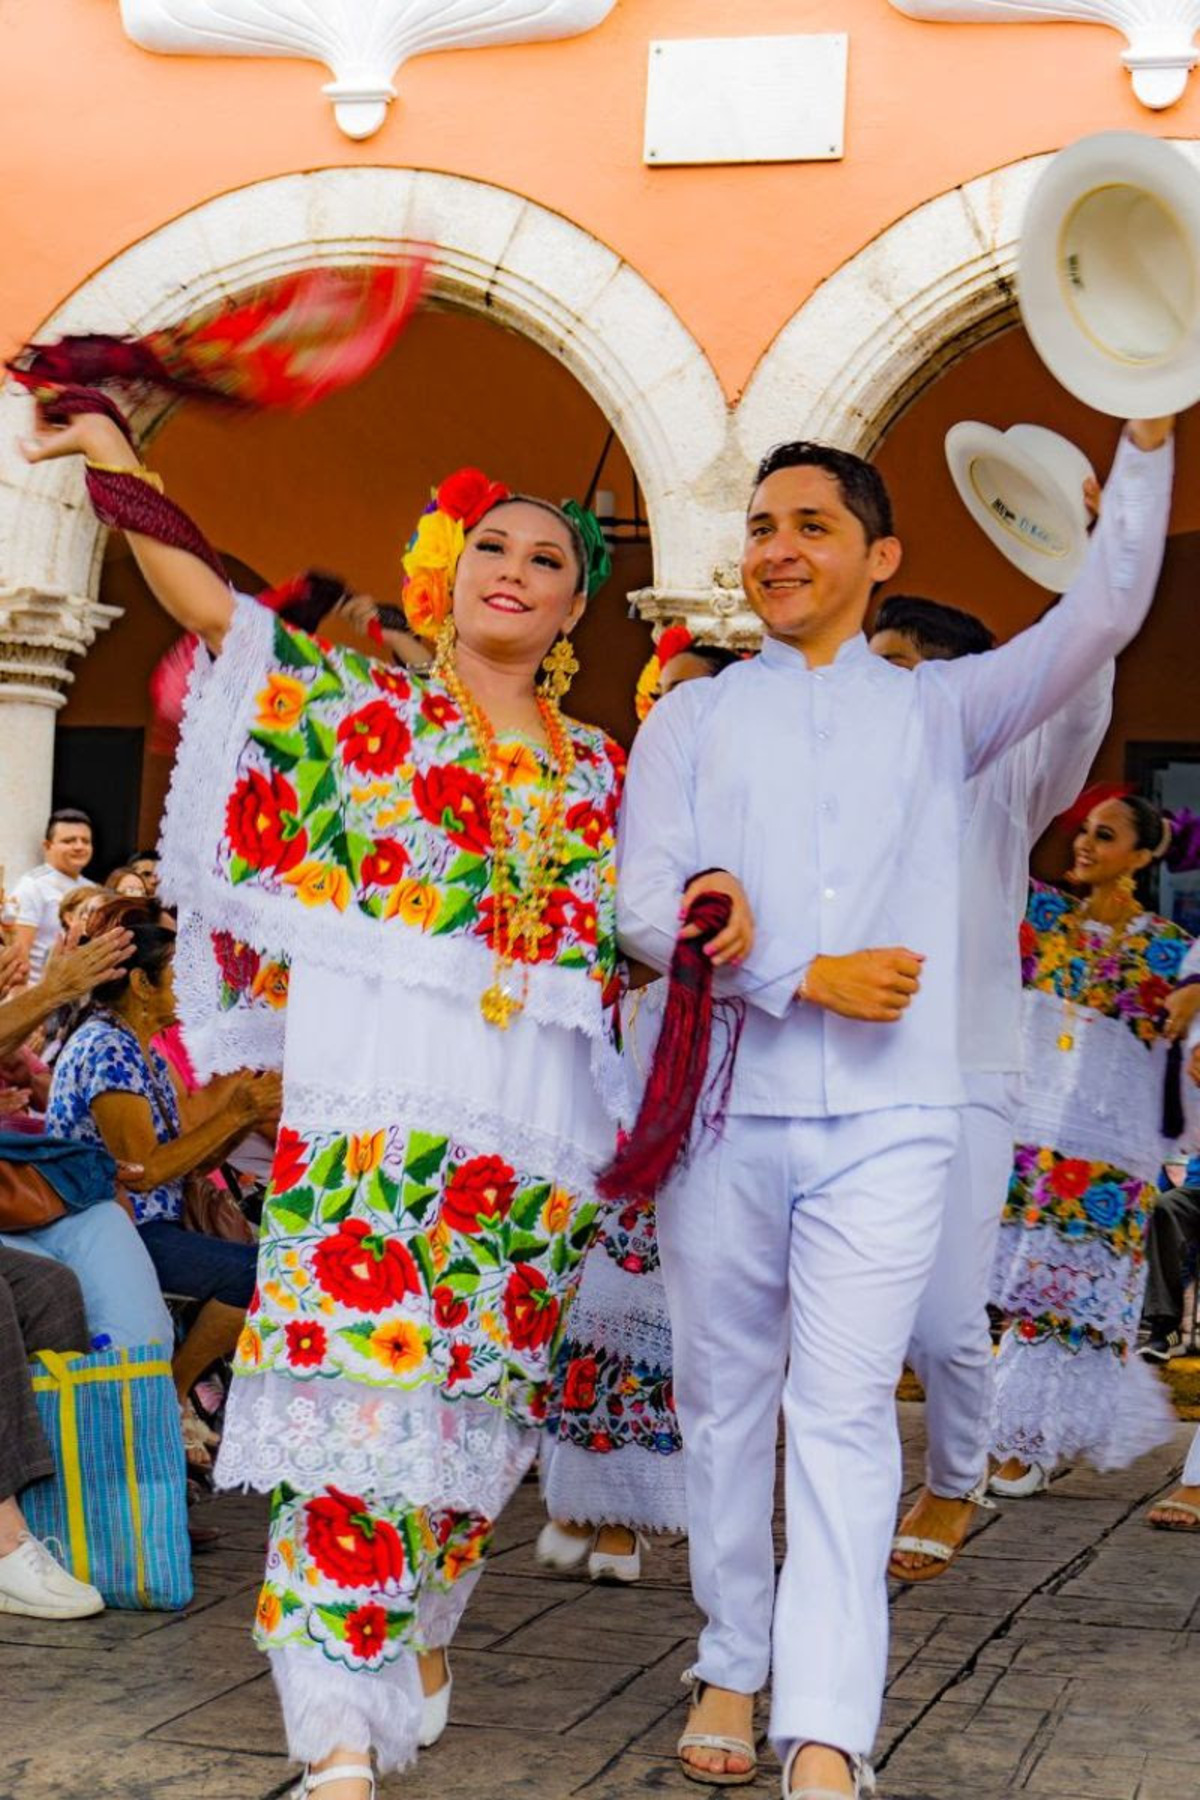 El terno es el atuendo que le da identidad y cultura a Yucatán